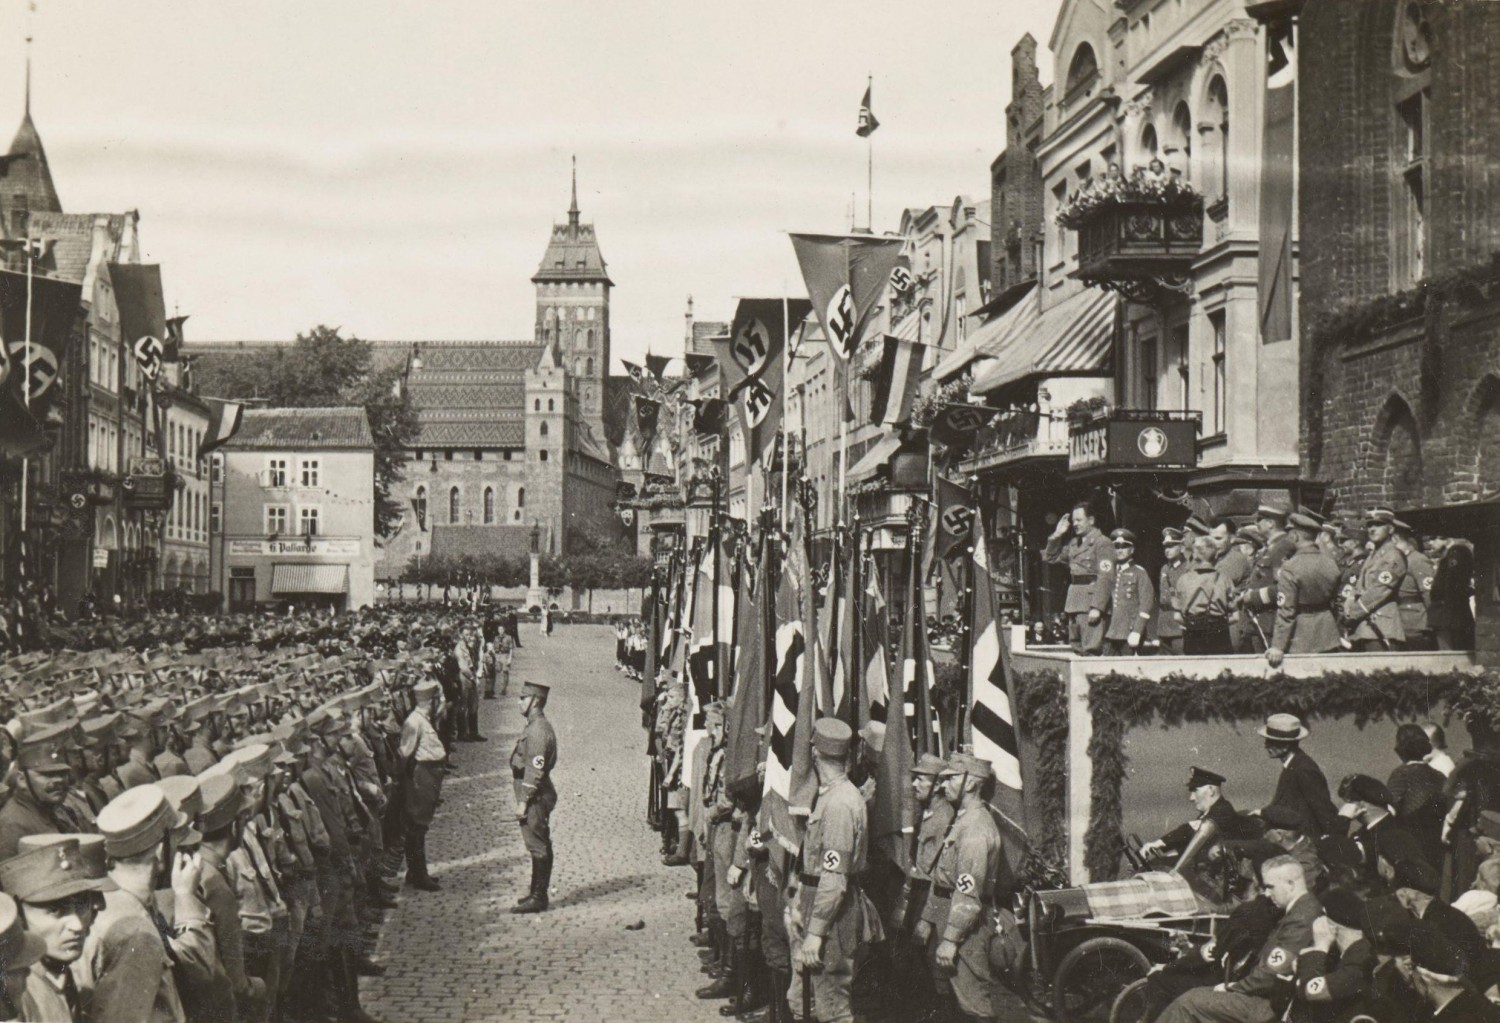 fot. Heinrich van der Piepen, Uroczystości hitlerowskie przed ratuszem na Rynku Starego Miasta w Malborku, ok. 1933, Polona